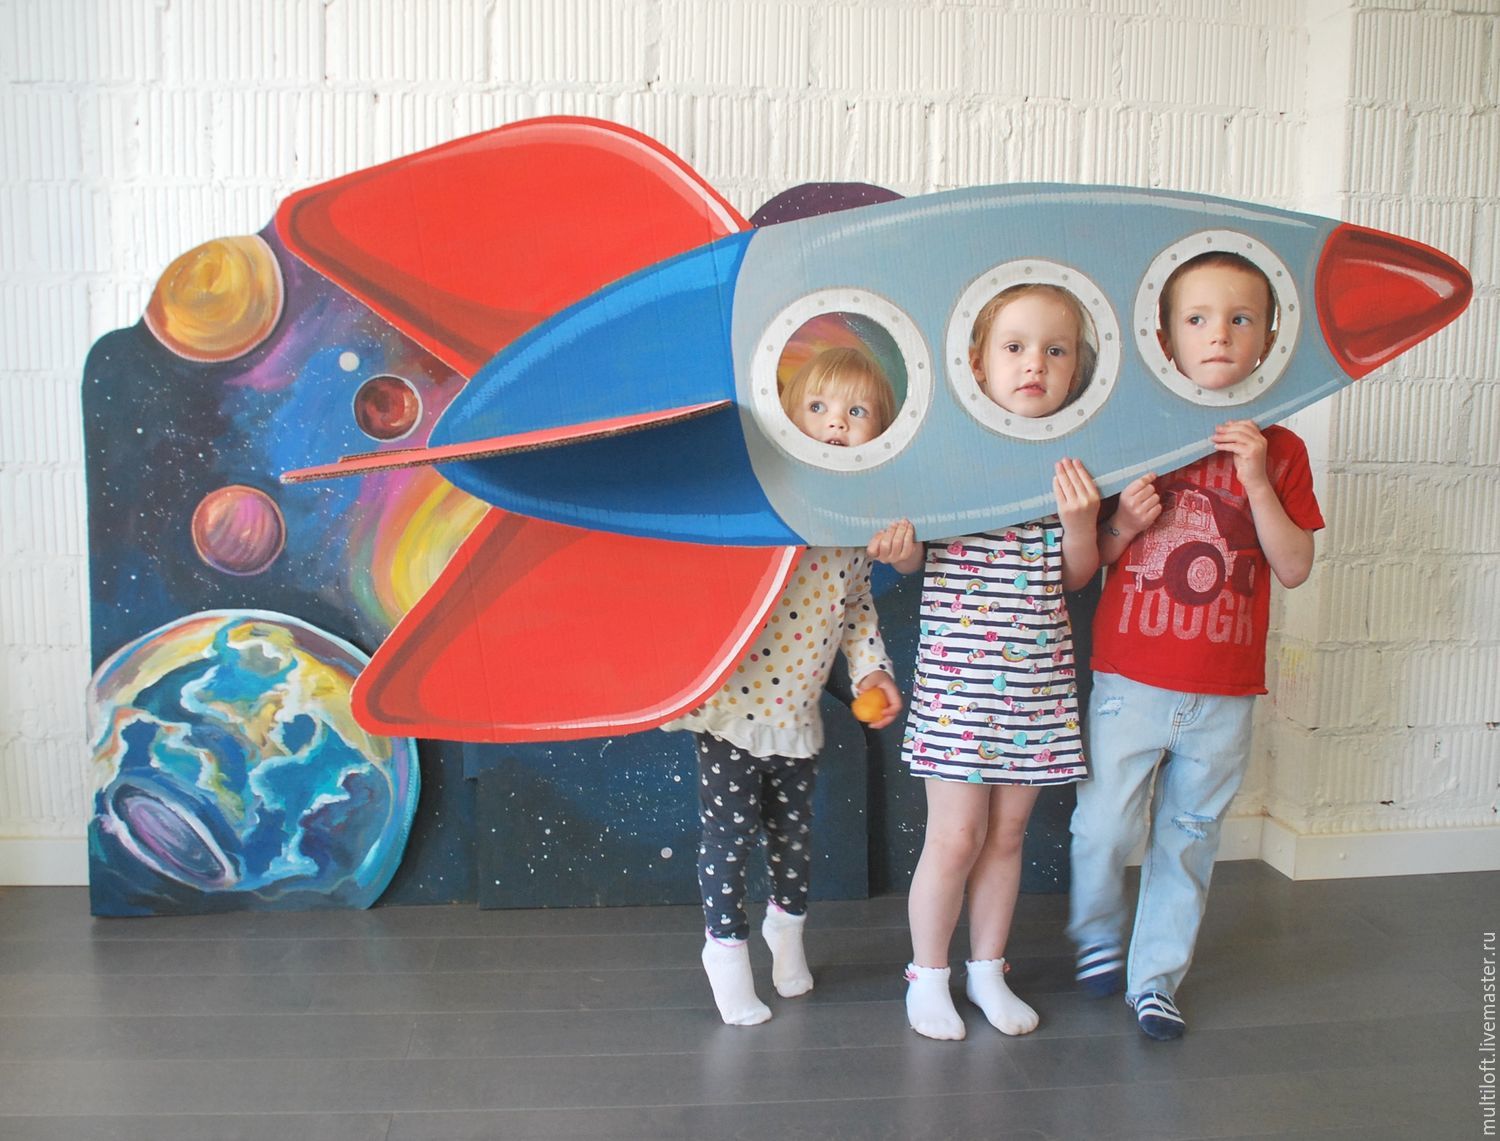 Оформление зала день космонавтики в детском саду. Фотозоны ко Дню космонавтики. День космонавтики для детей в детском саду фотозона. Ракета для фотозоны для детей. Космическая фотозона в детском саду.